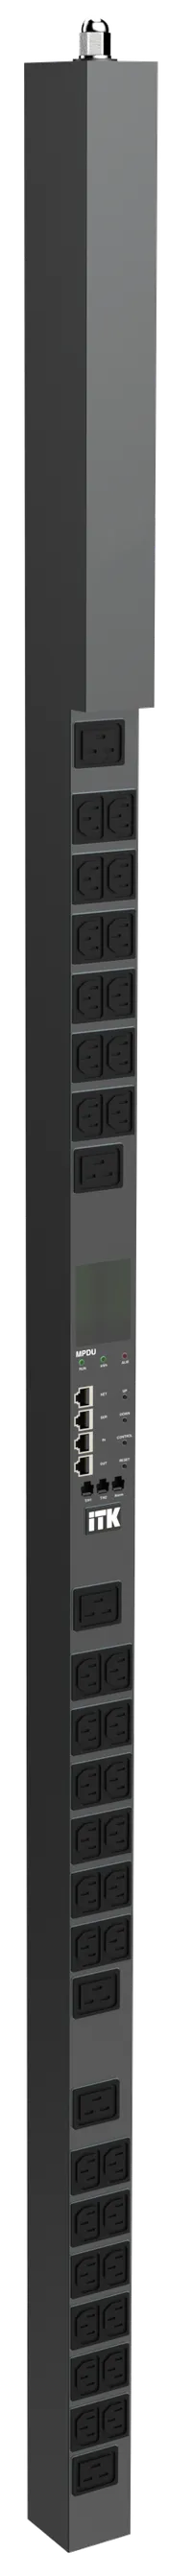 ITK ADMIN PDU с общим мониторингом PV1412 1Ф 32А 36С13 6С19 кабель 3м IEC60309